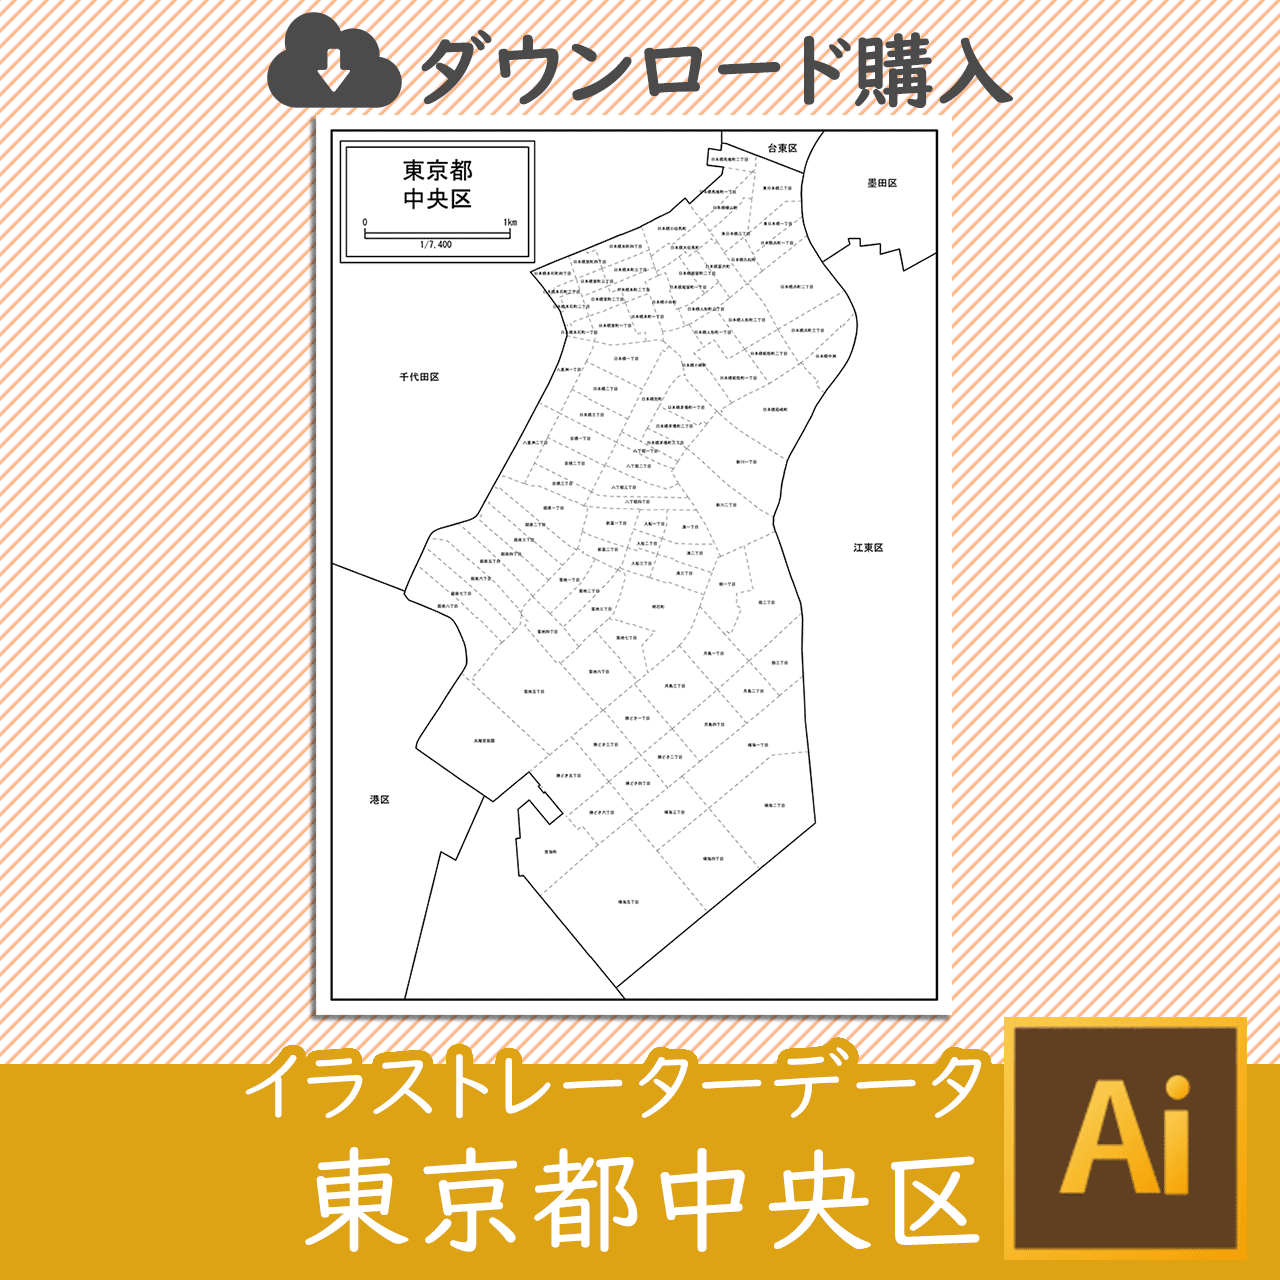 東京都中央区のaiデータのサムネイル画像